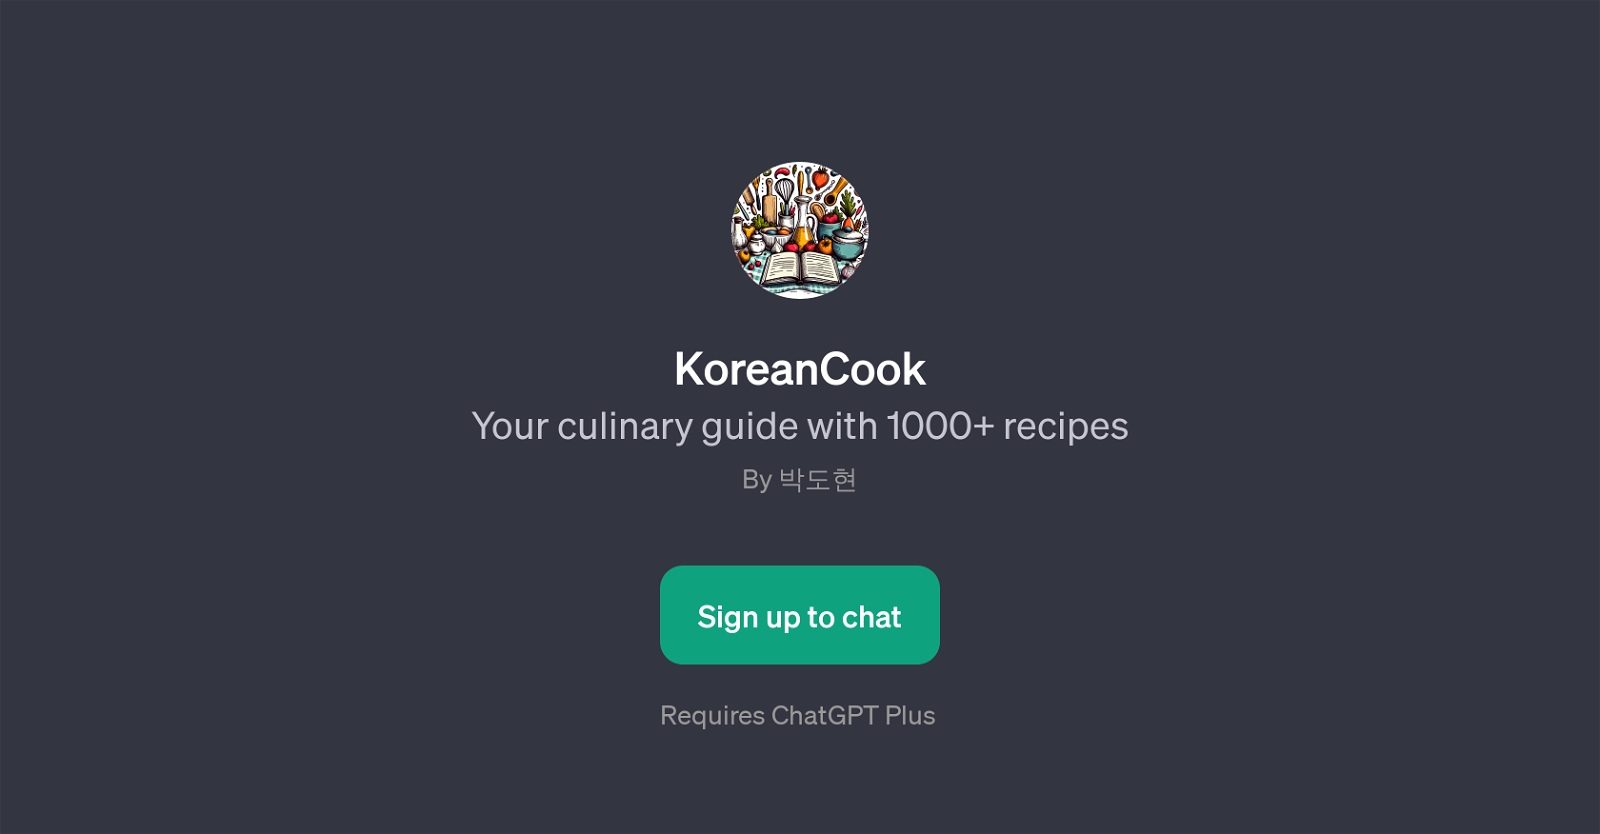 KoreanCook website